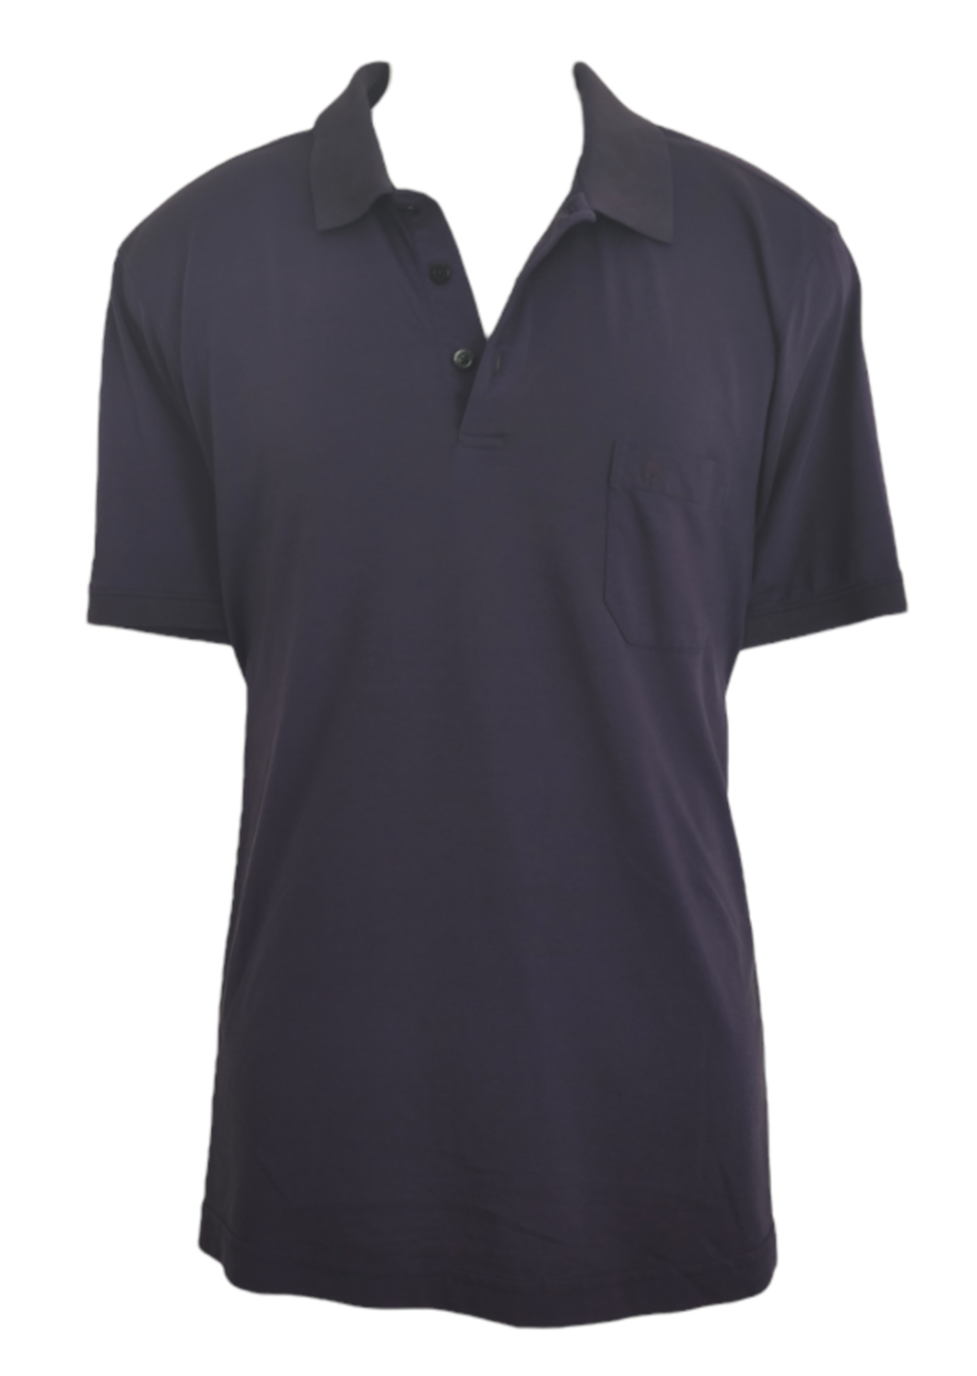 Ανδρική Μπλούζα - T-Shirt RAGMAN σε Σκούρο Μωβ χρώμα (Large)